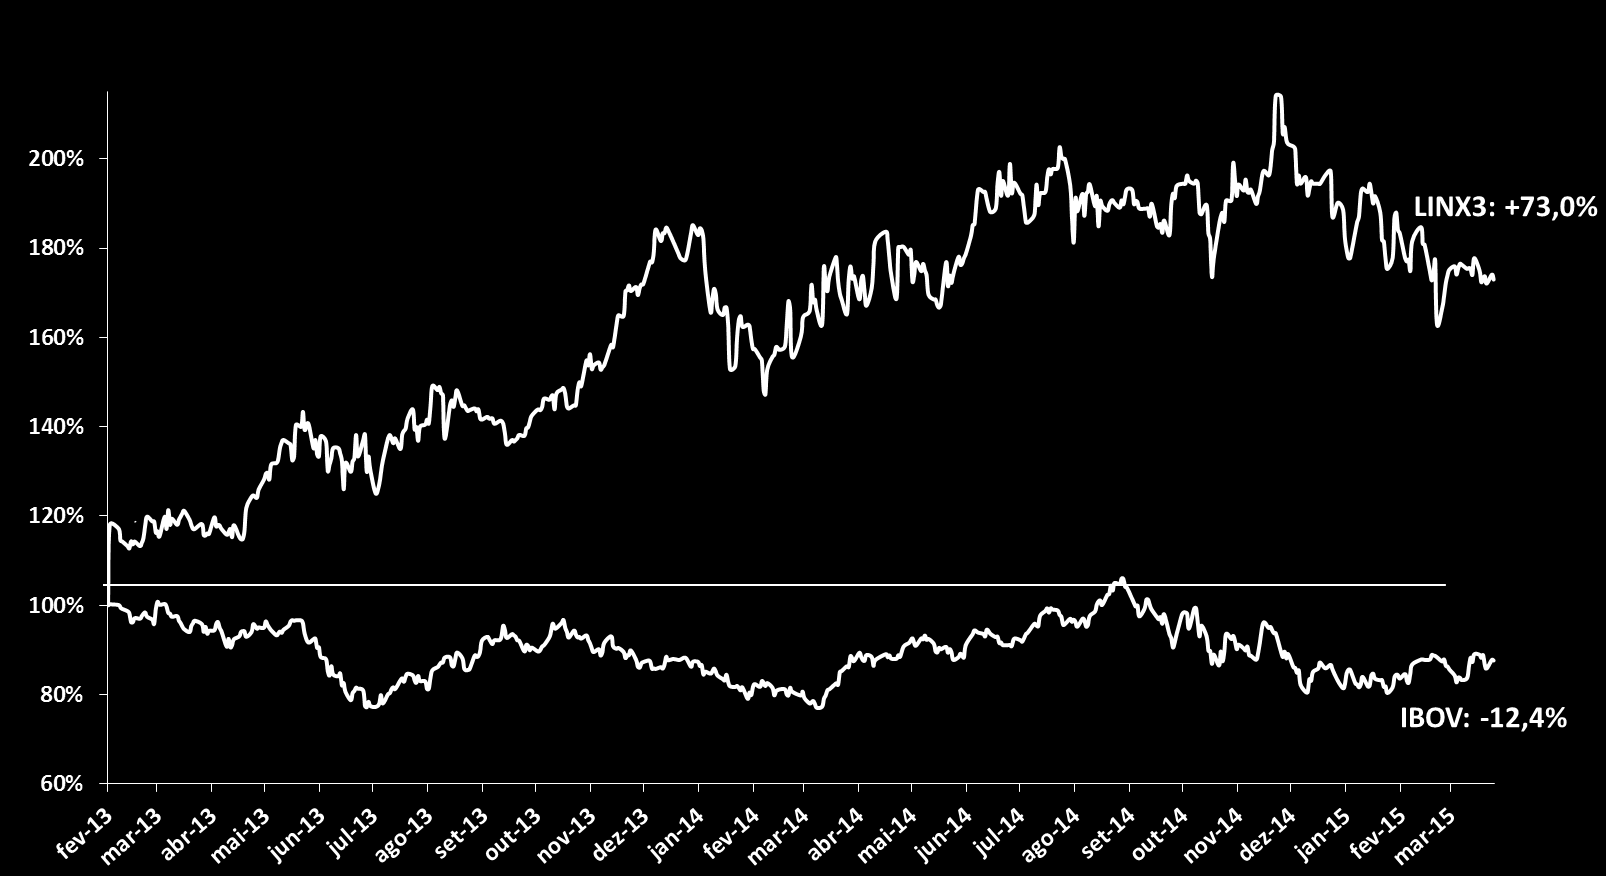 Mercado de Capitais Gráfico 14: Desempenho da ação desde o IPO* (07/02/2013 = 100) Da data de início das negociações, até o final do, a ação da Linx (LINX3) apresentou valorização de 73,0%, em